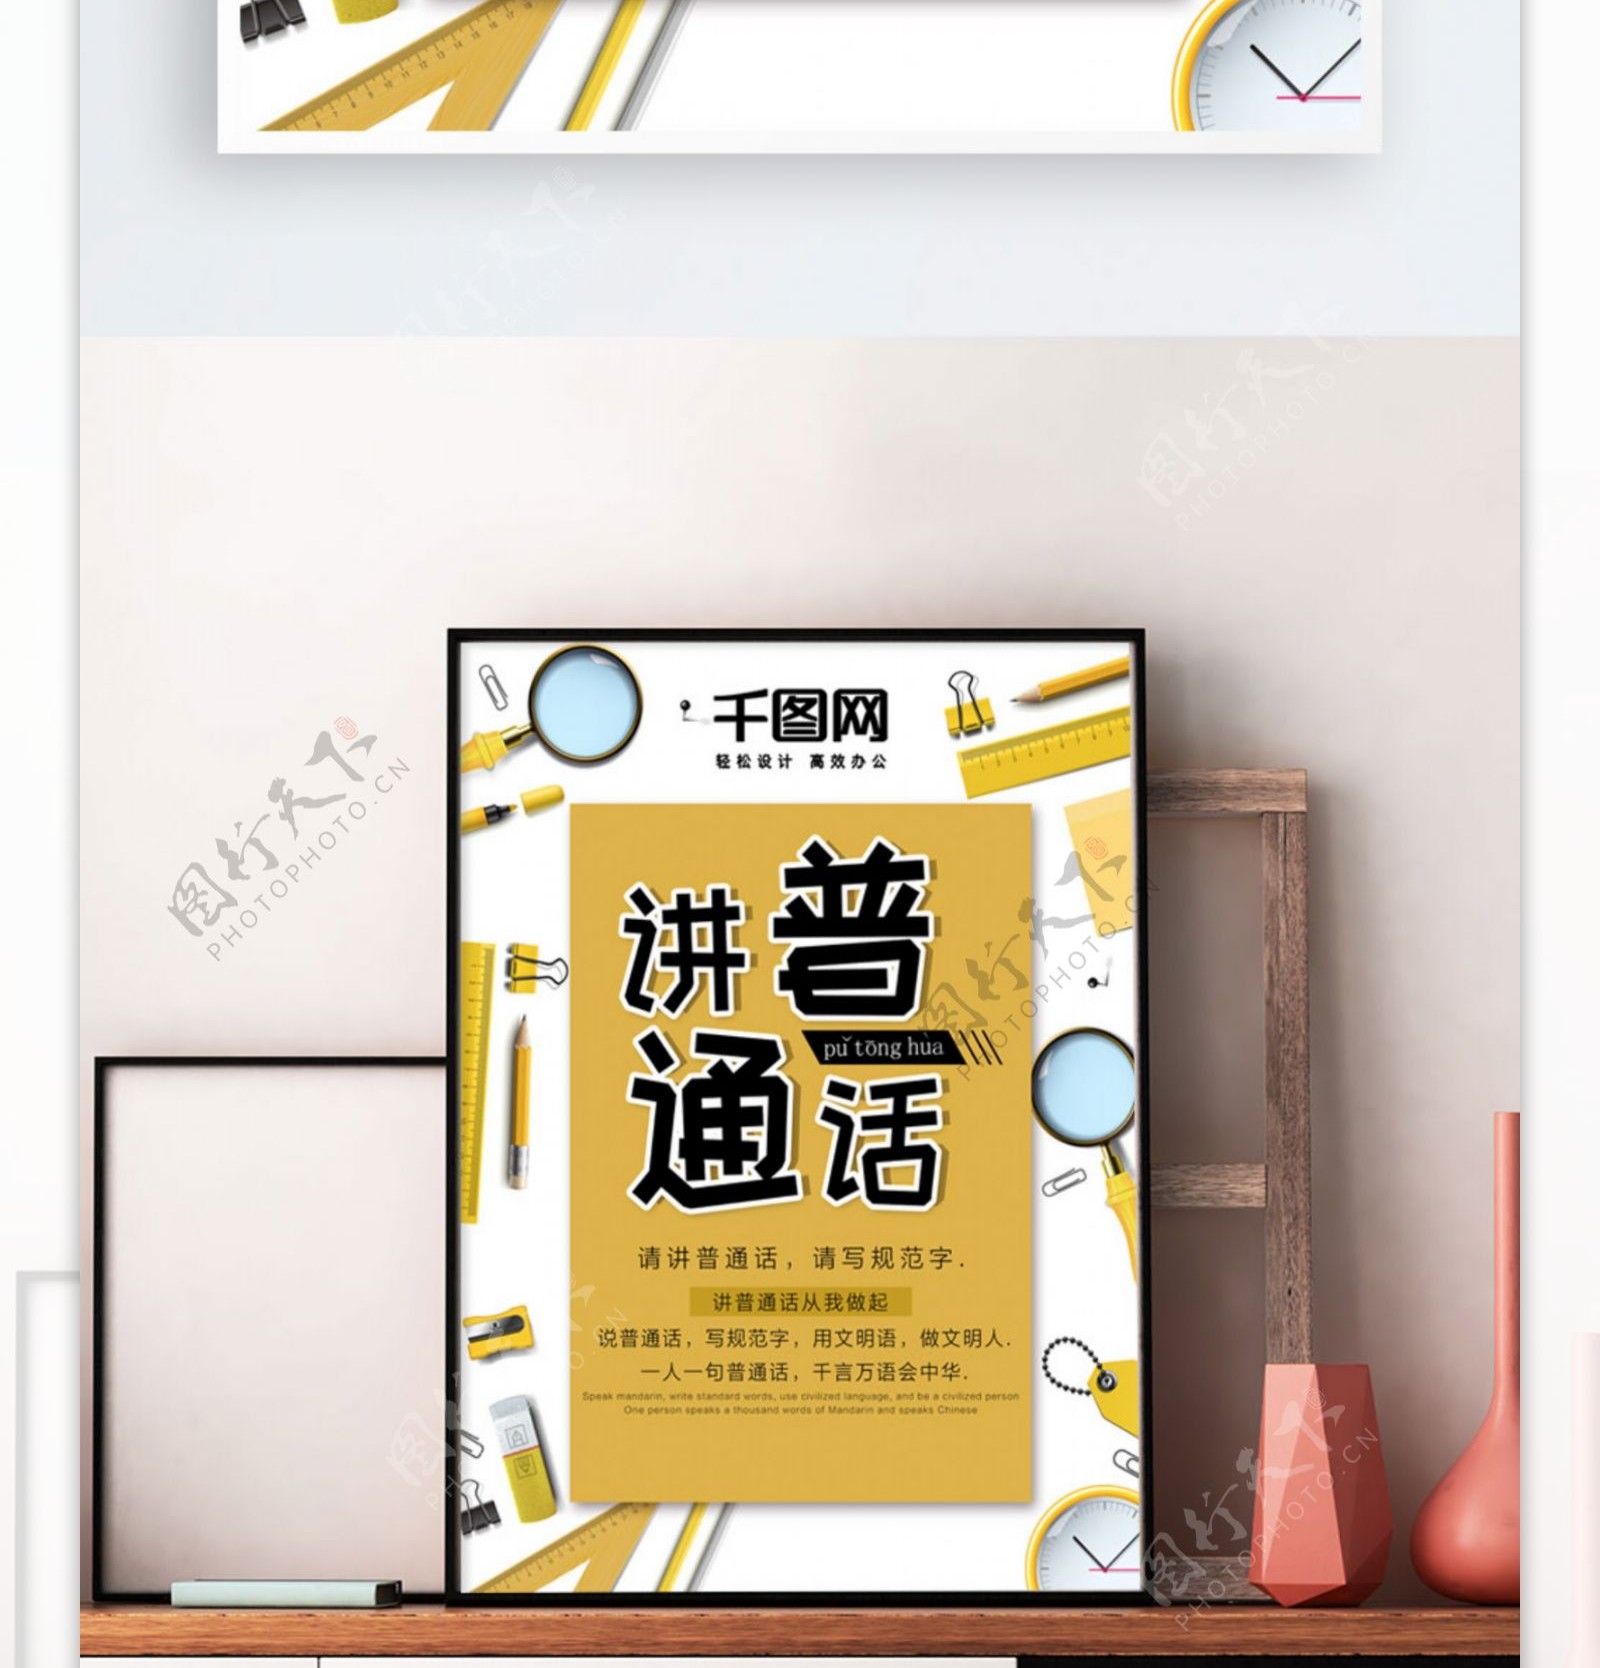 创意小清新黄色普通话宣传海报